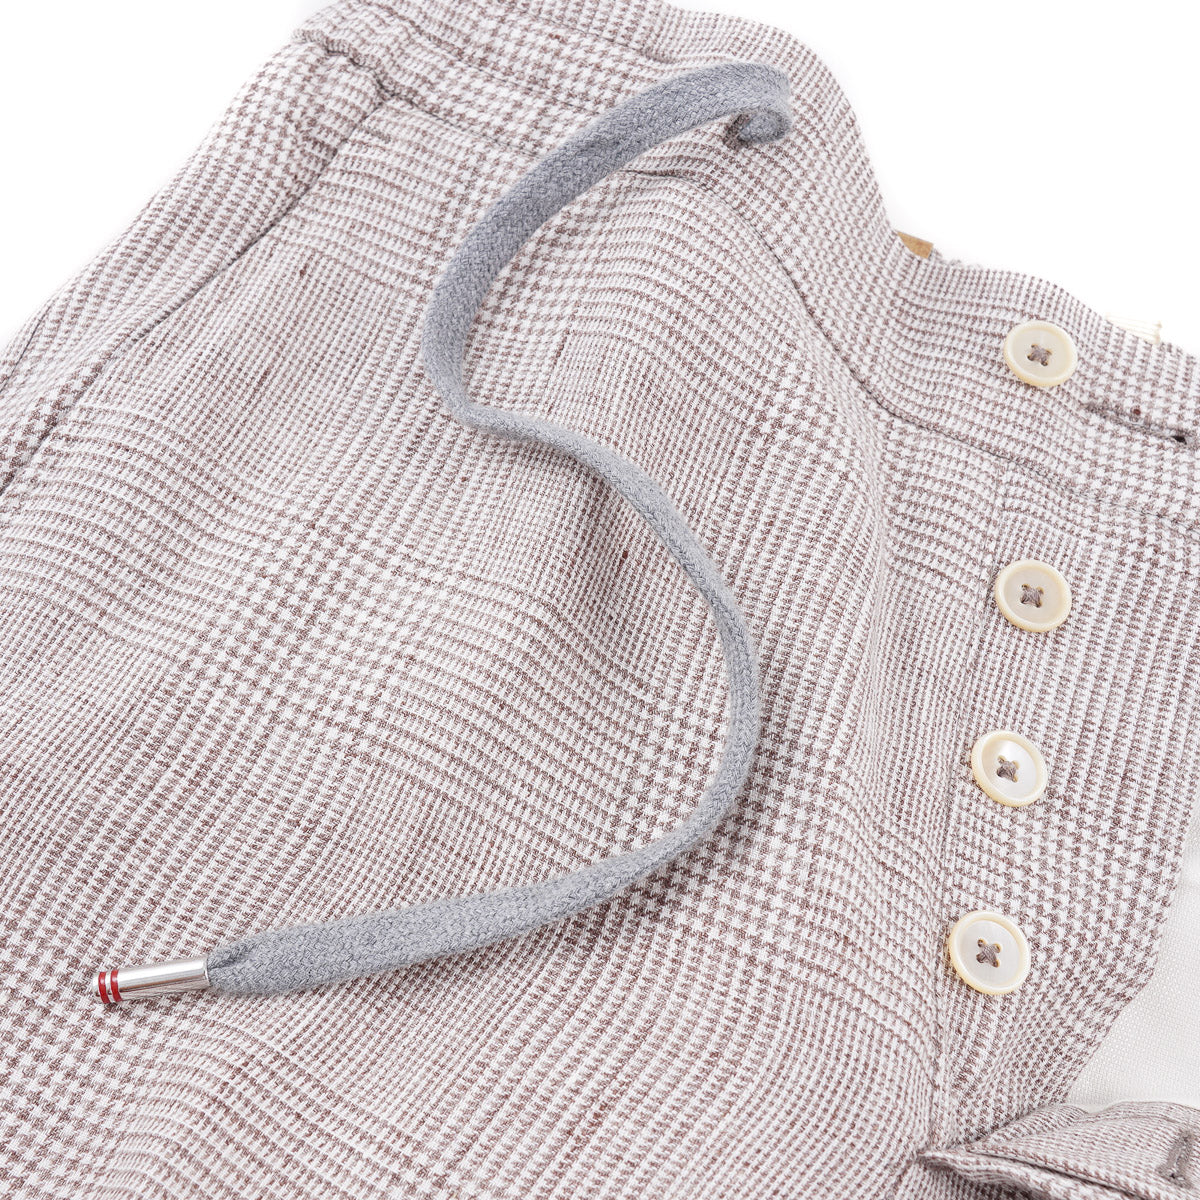 Marco Pescarolo Linen Pants with Cargo Pockets - Top Shelf Apparel